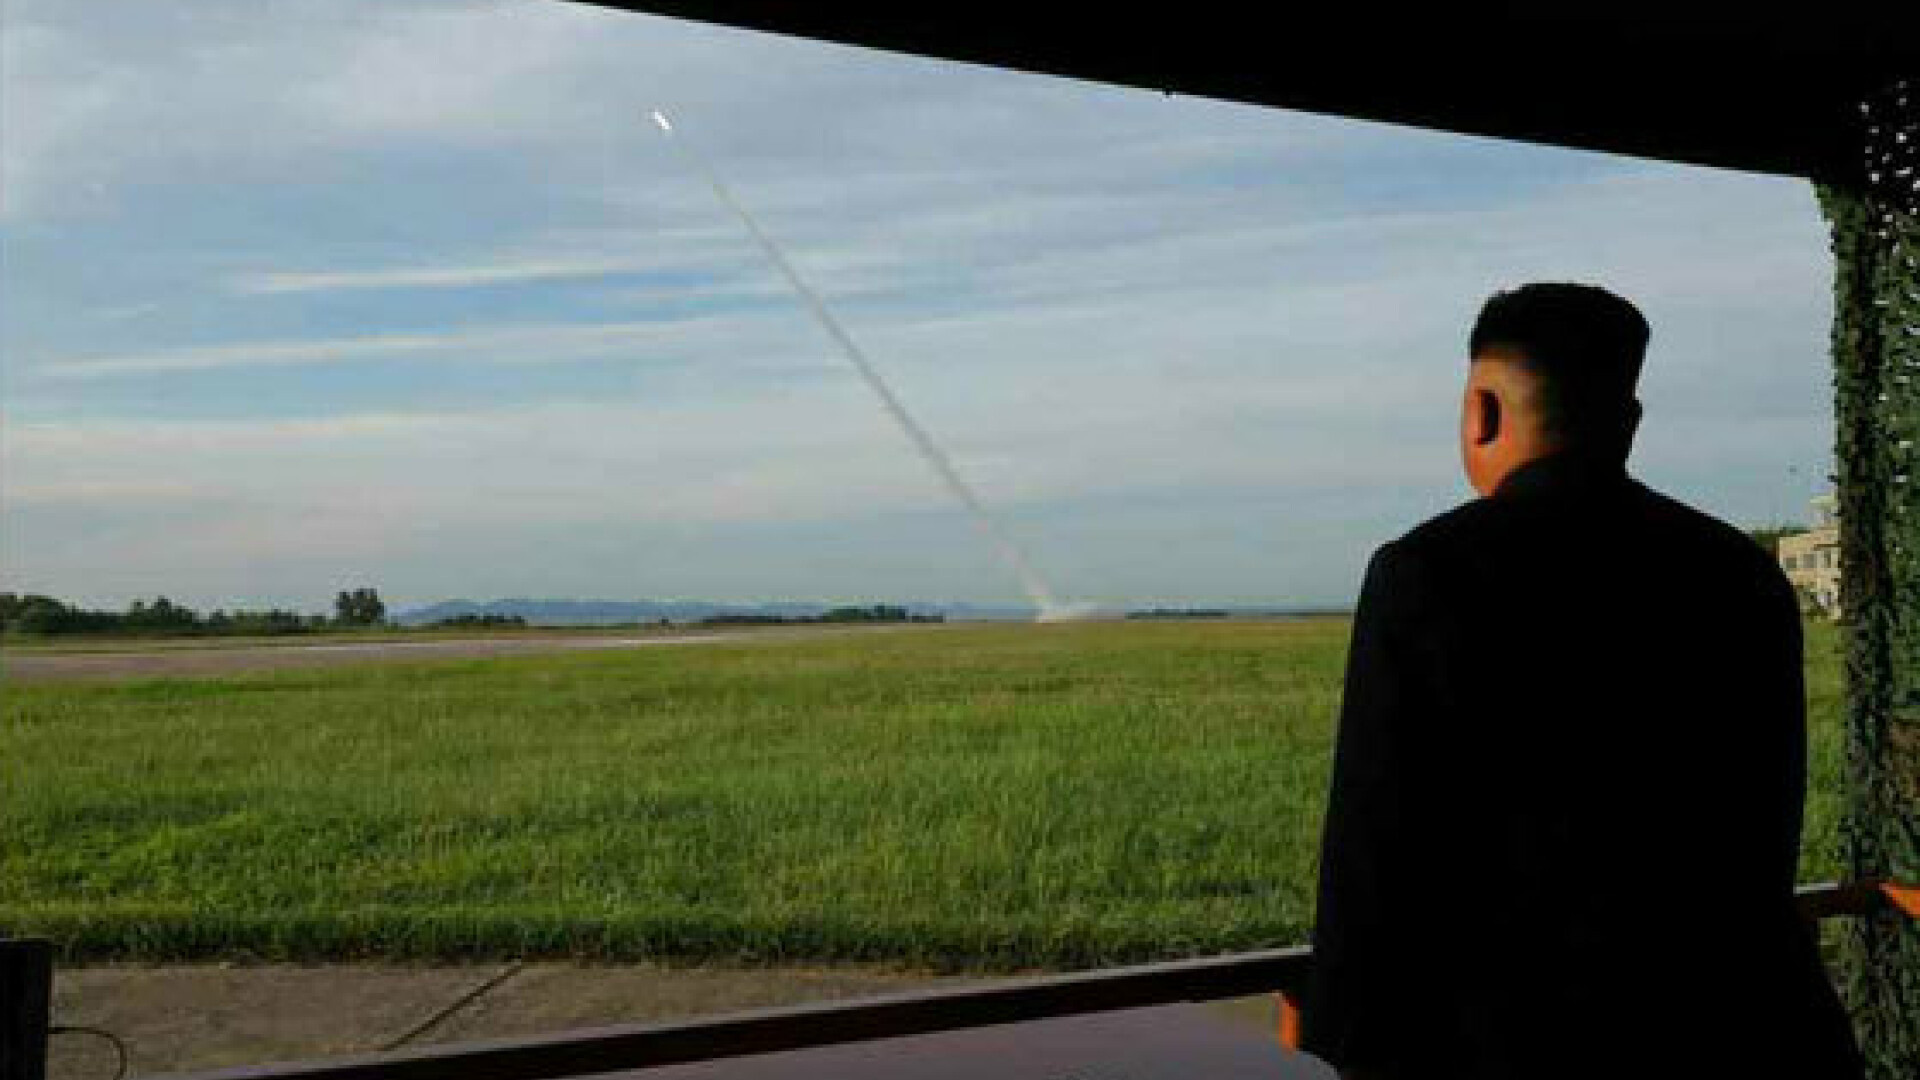 Test al unui lansator multiplu de rachete, in Coreea de Nord - 16